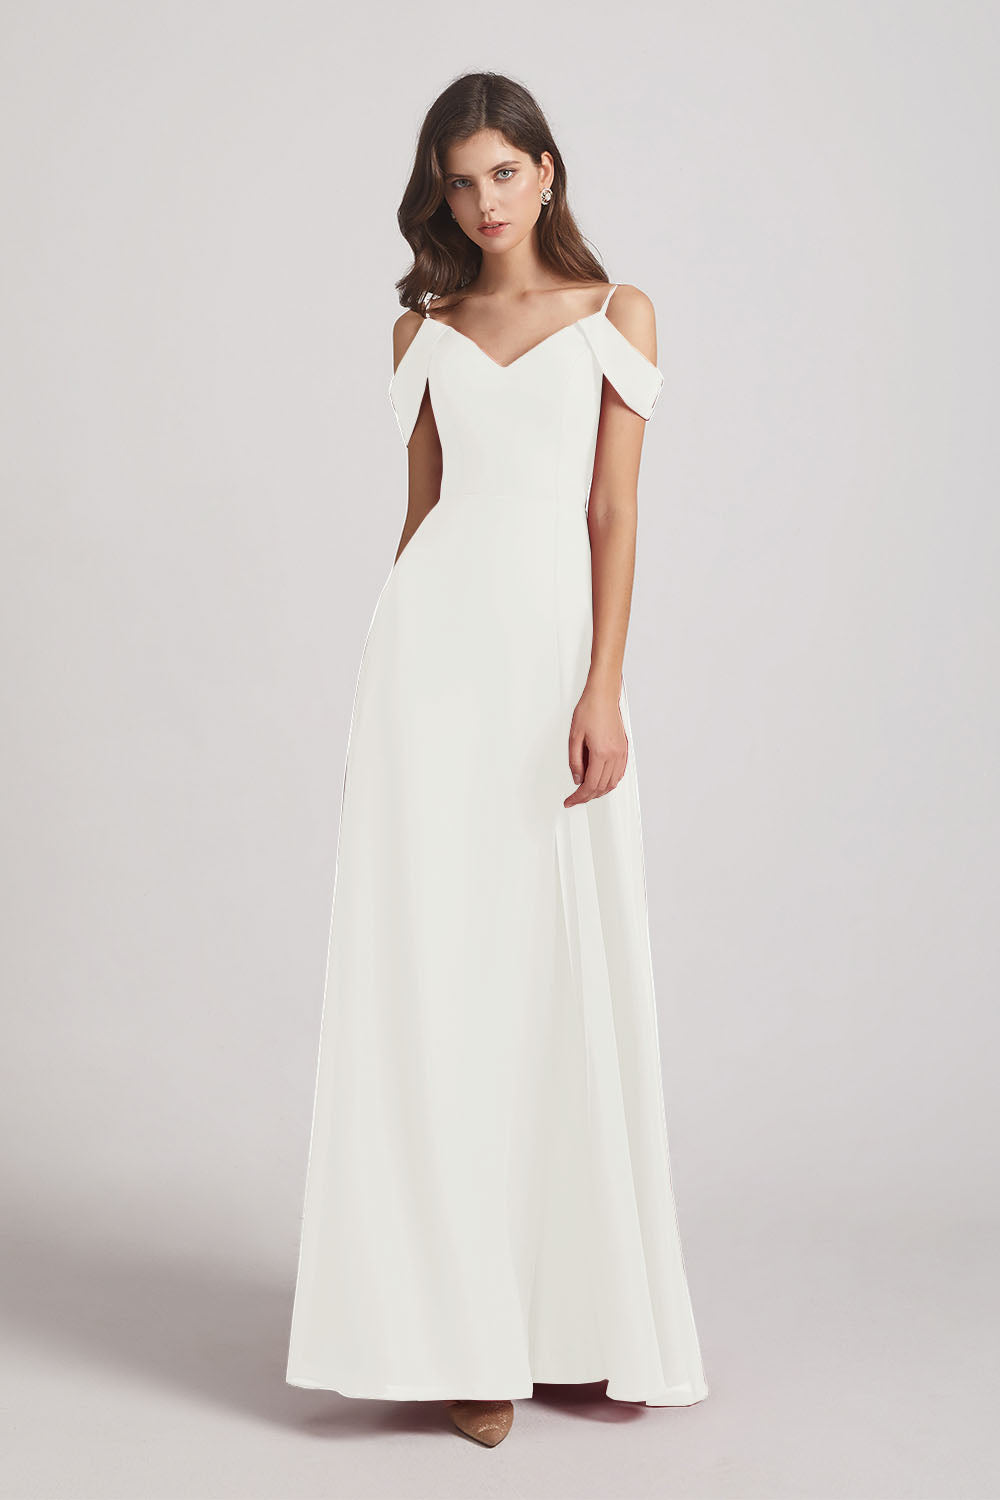 Alfa Bridal Ivory Chiffon Cold Shoulder V-Neck Bridesmaid Dresses with Slit (AF0093)